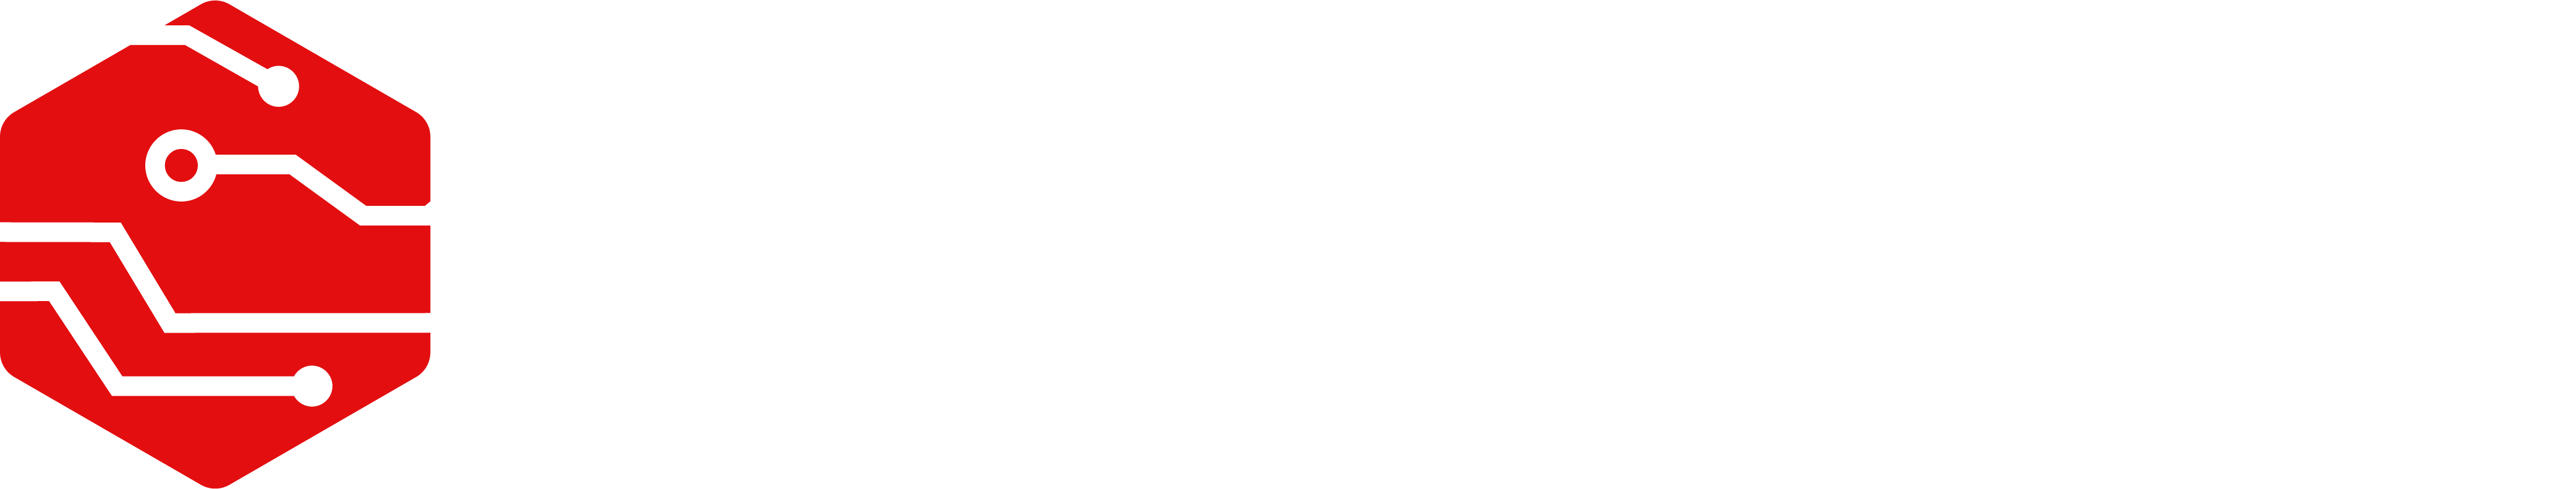 TechBravo-White-Logo-Design